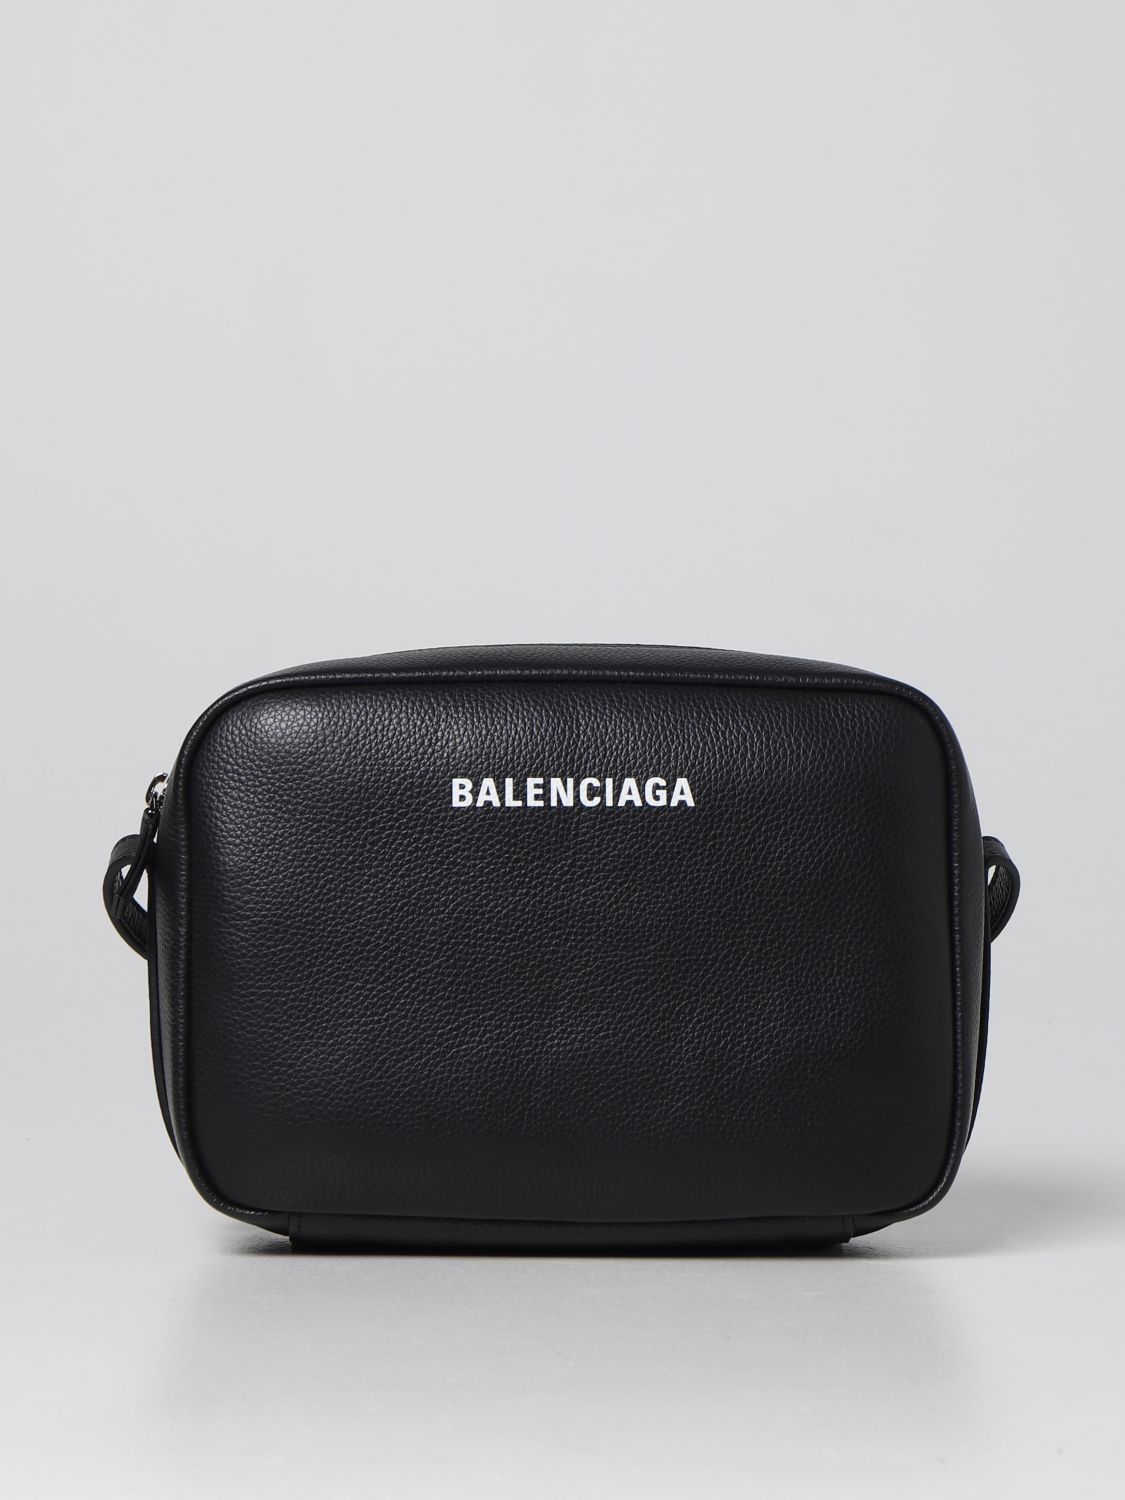 Balenciaga Everyday Pouch Bag - Black